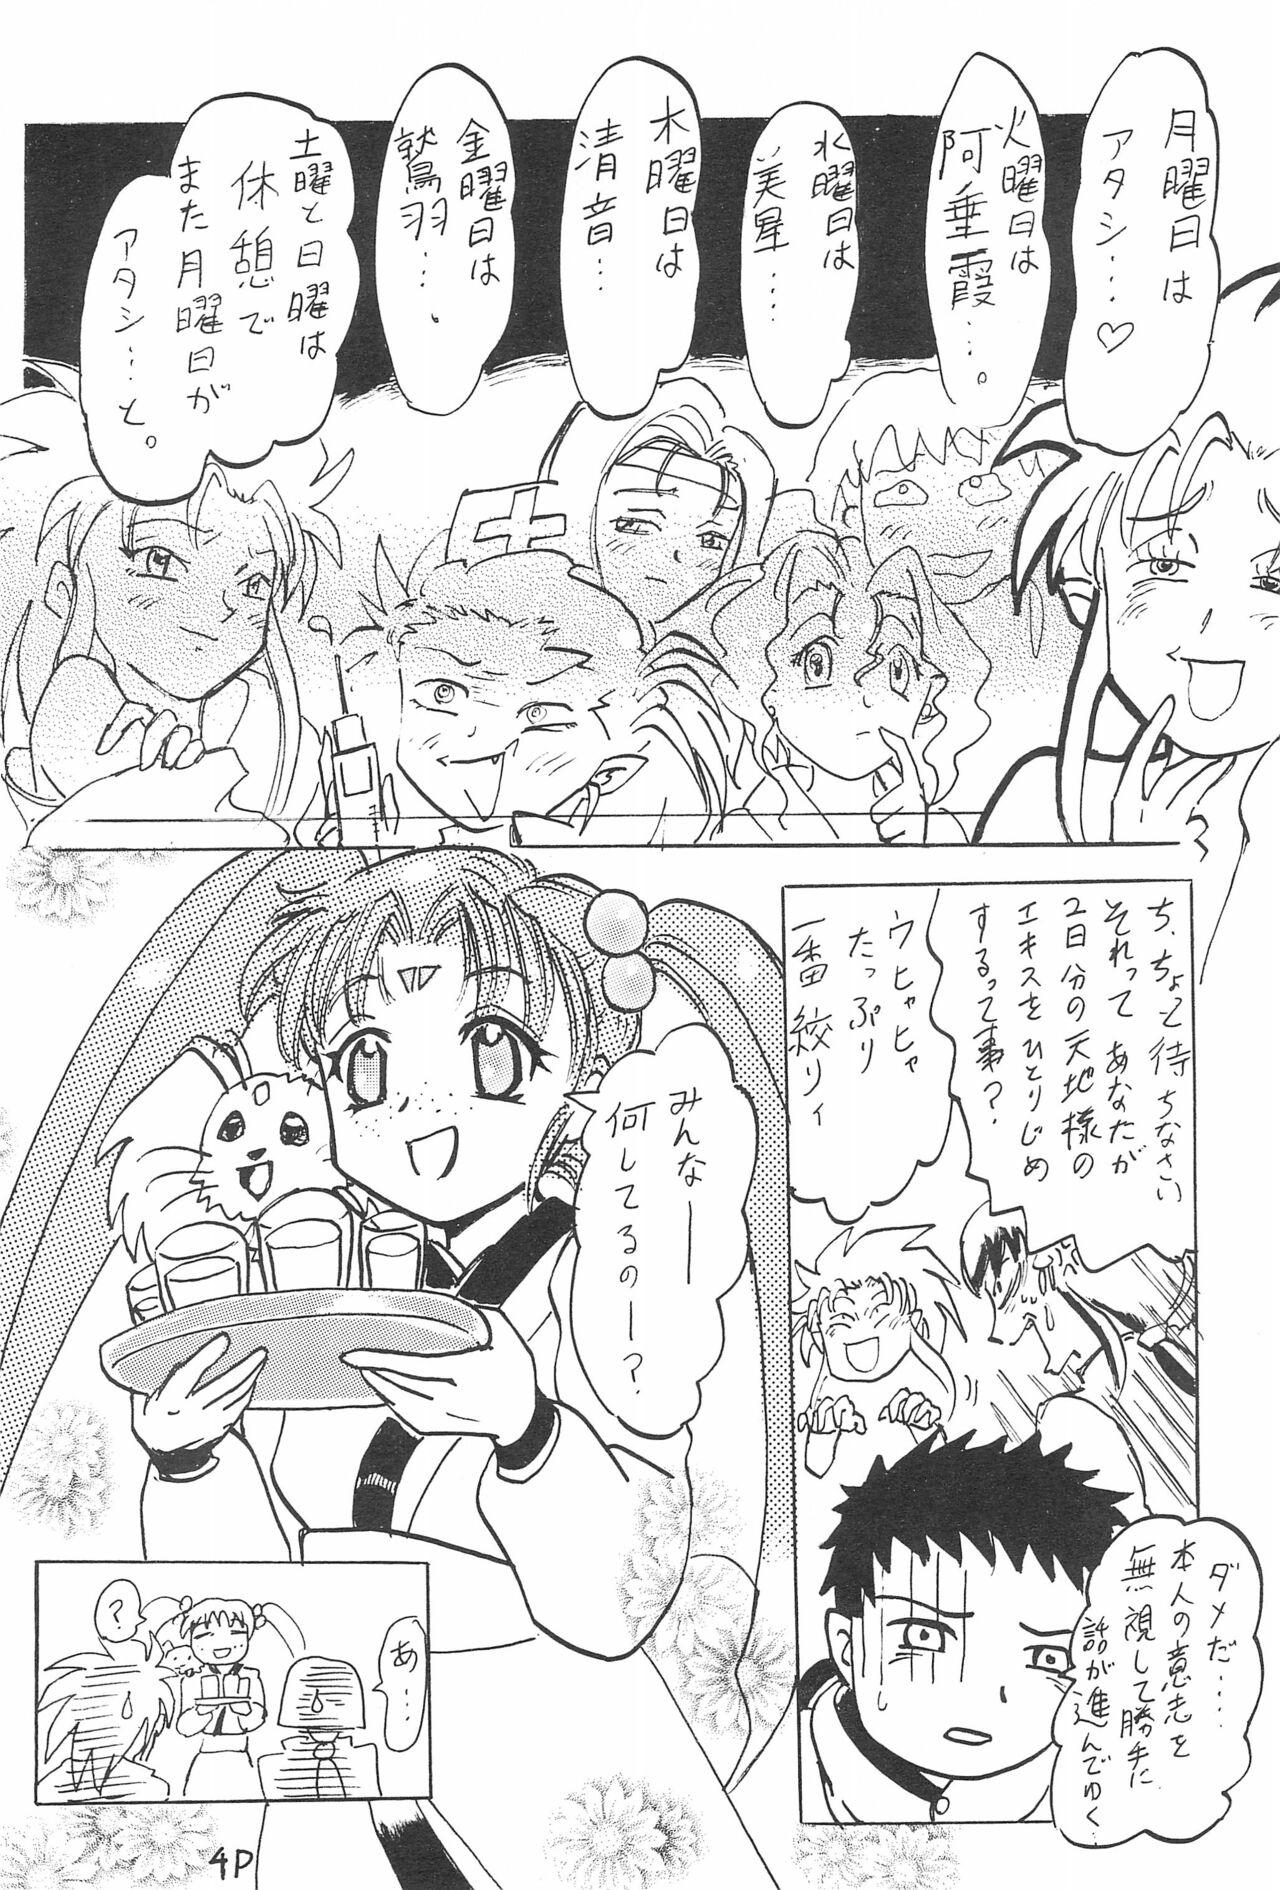 Alt Aniome Imouto Ou 1 - Cardcaptor sakura Tenchi muyo From - Page 8